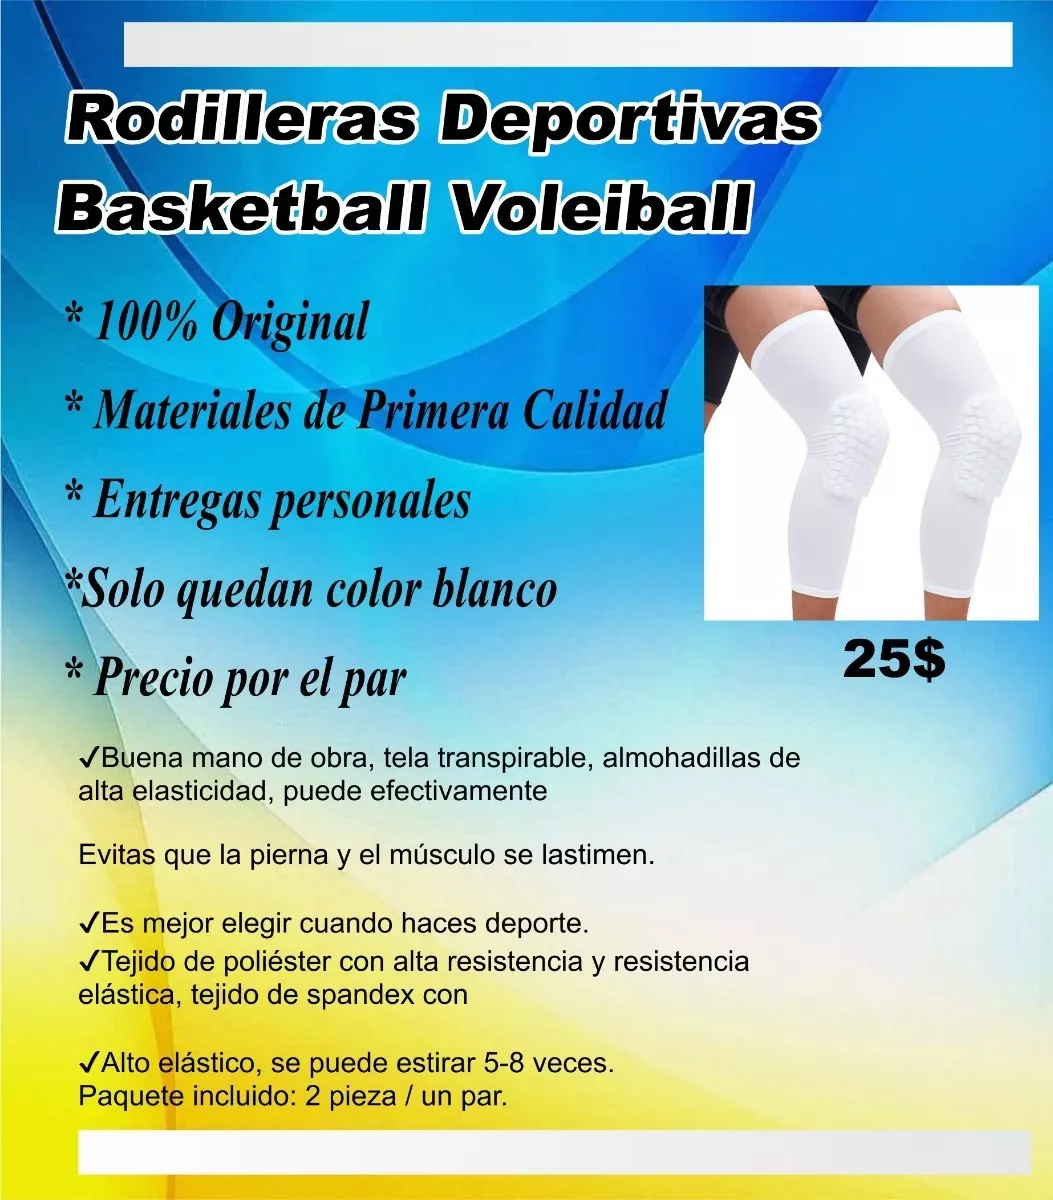 Rodilleras Deportivas Basketball Volleibol